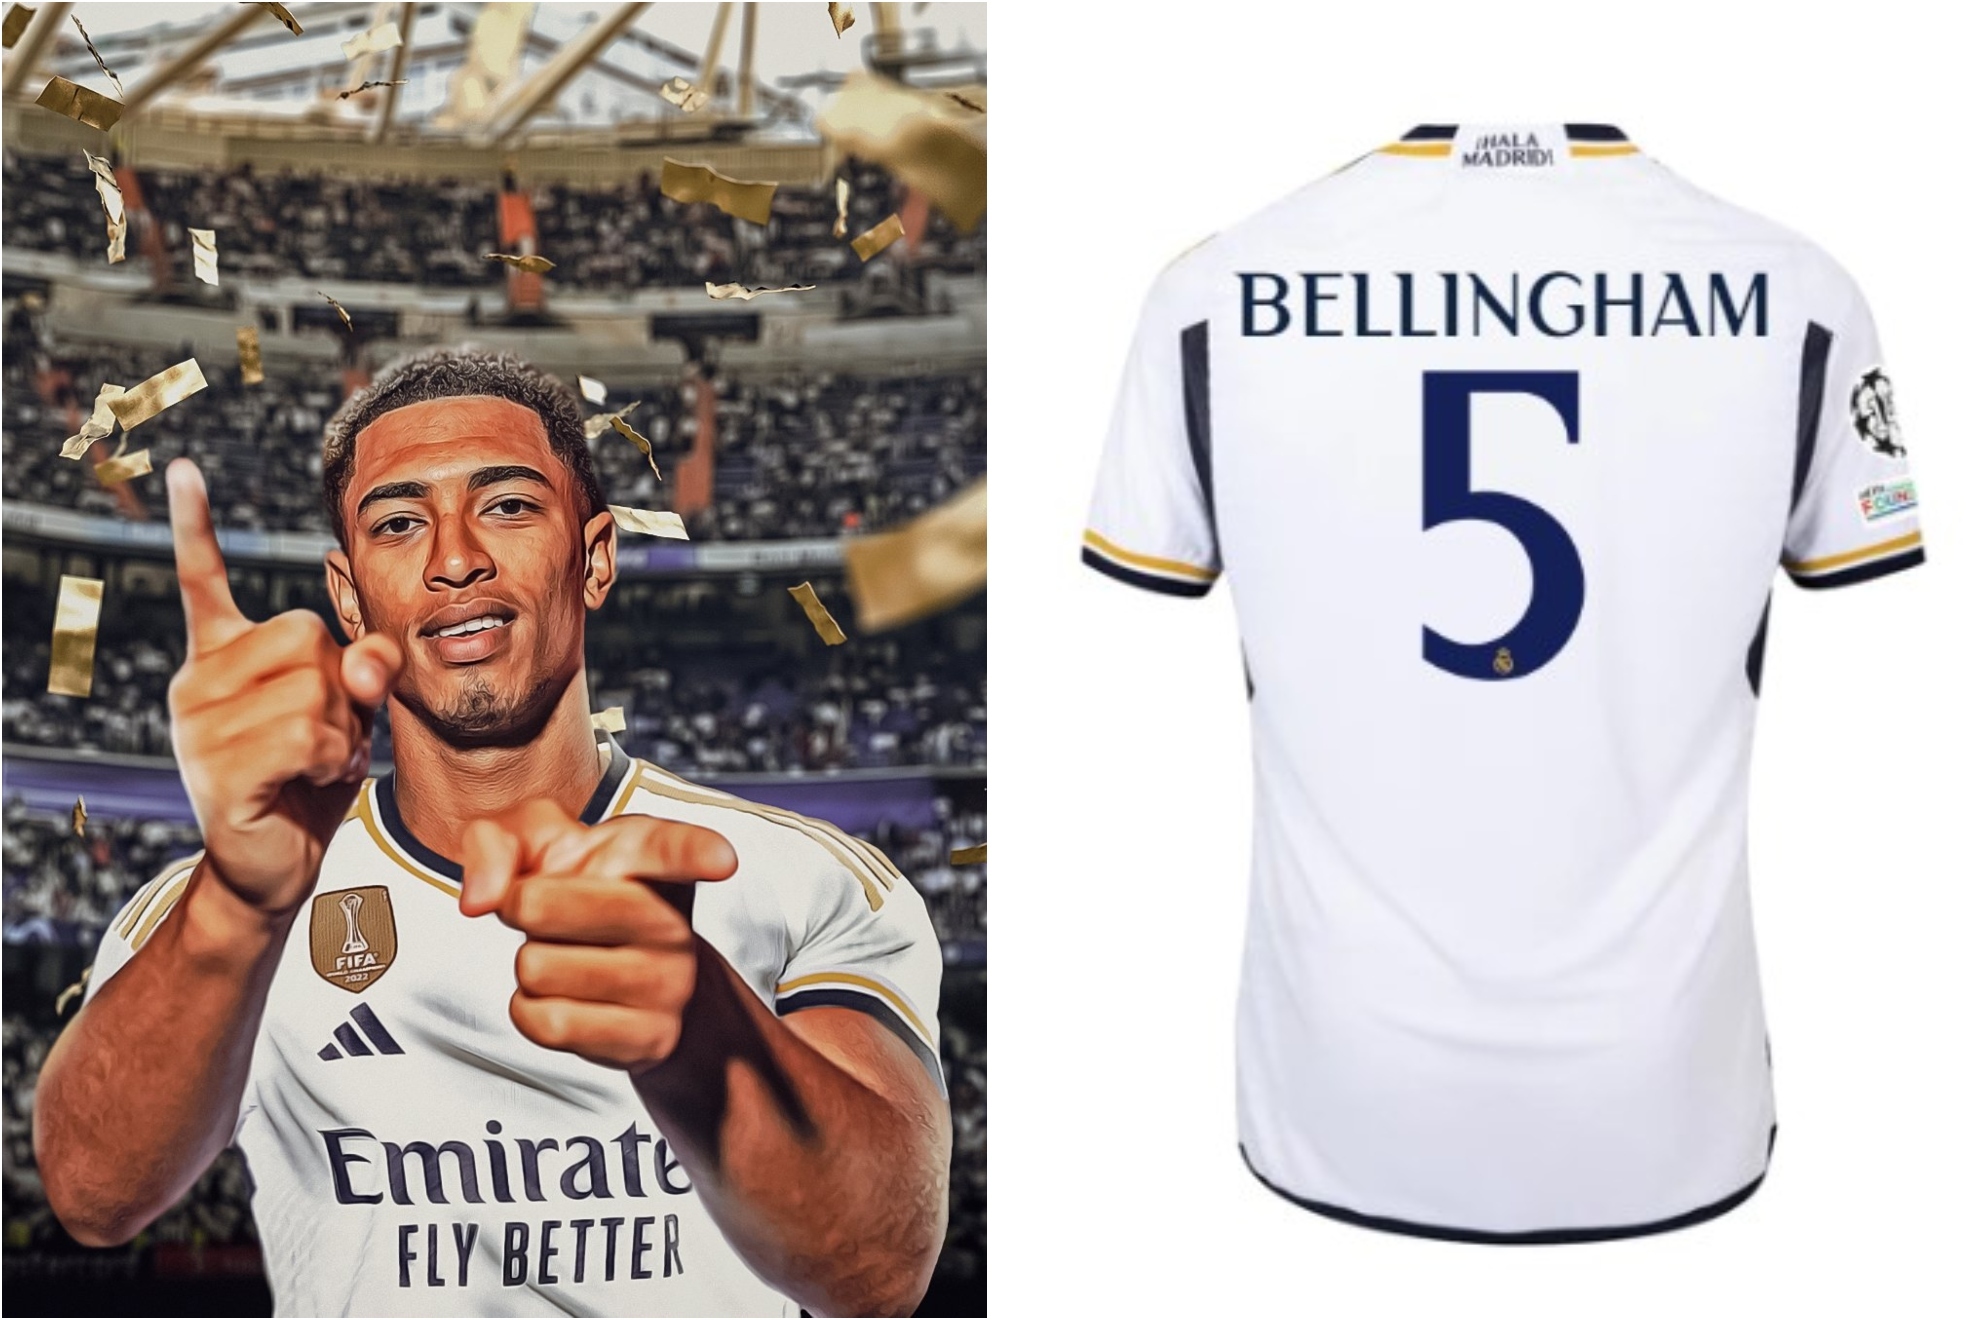 Jude Bellingham nació para jugar con la camiseta de Real Madrid”